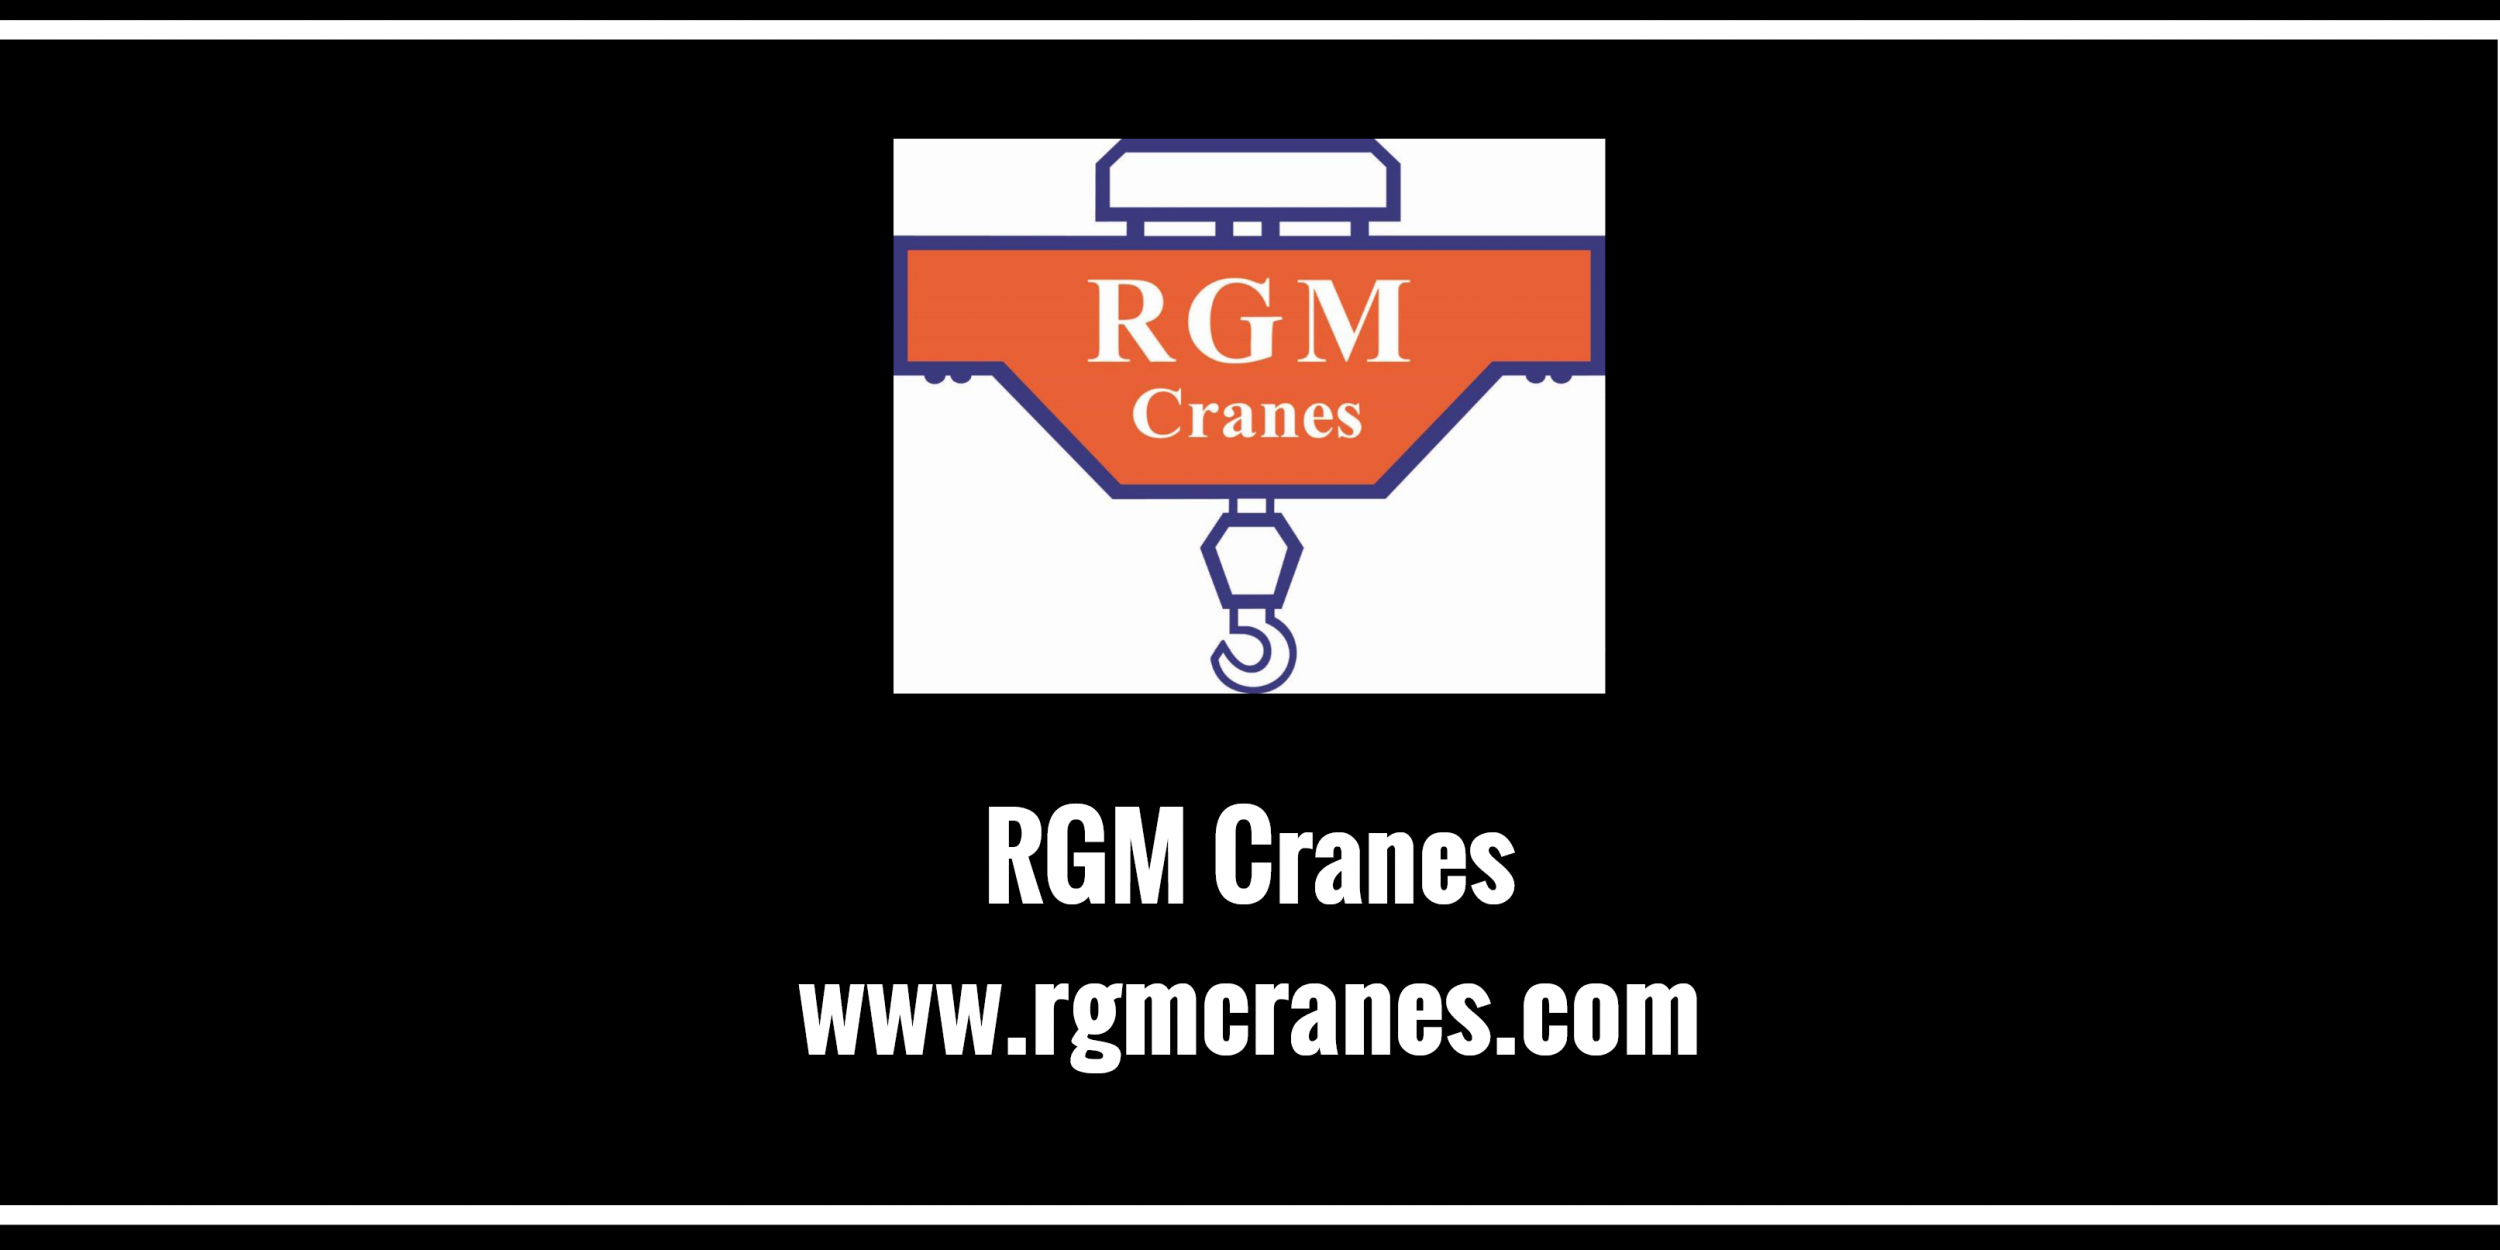 RGM Cranes